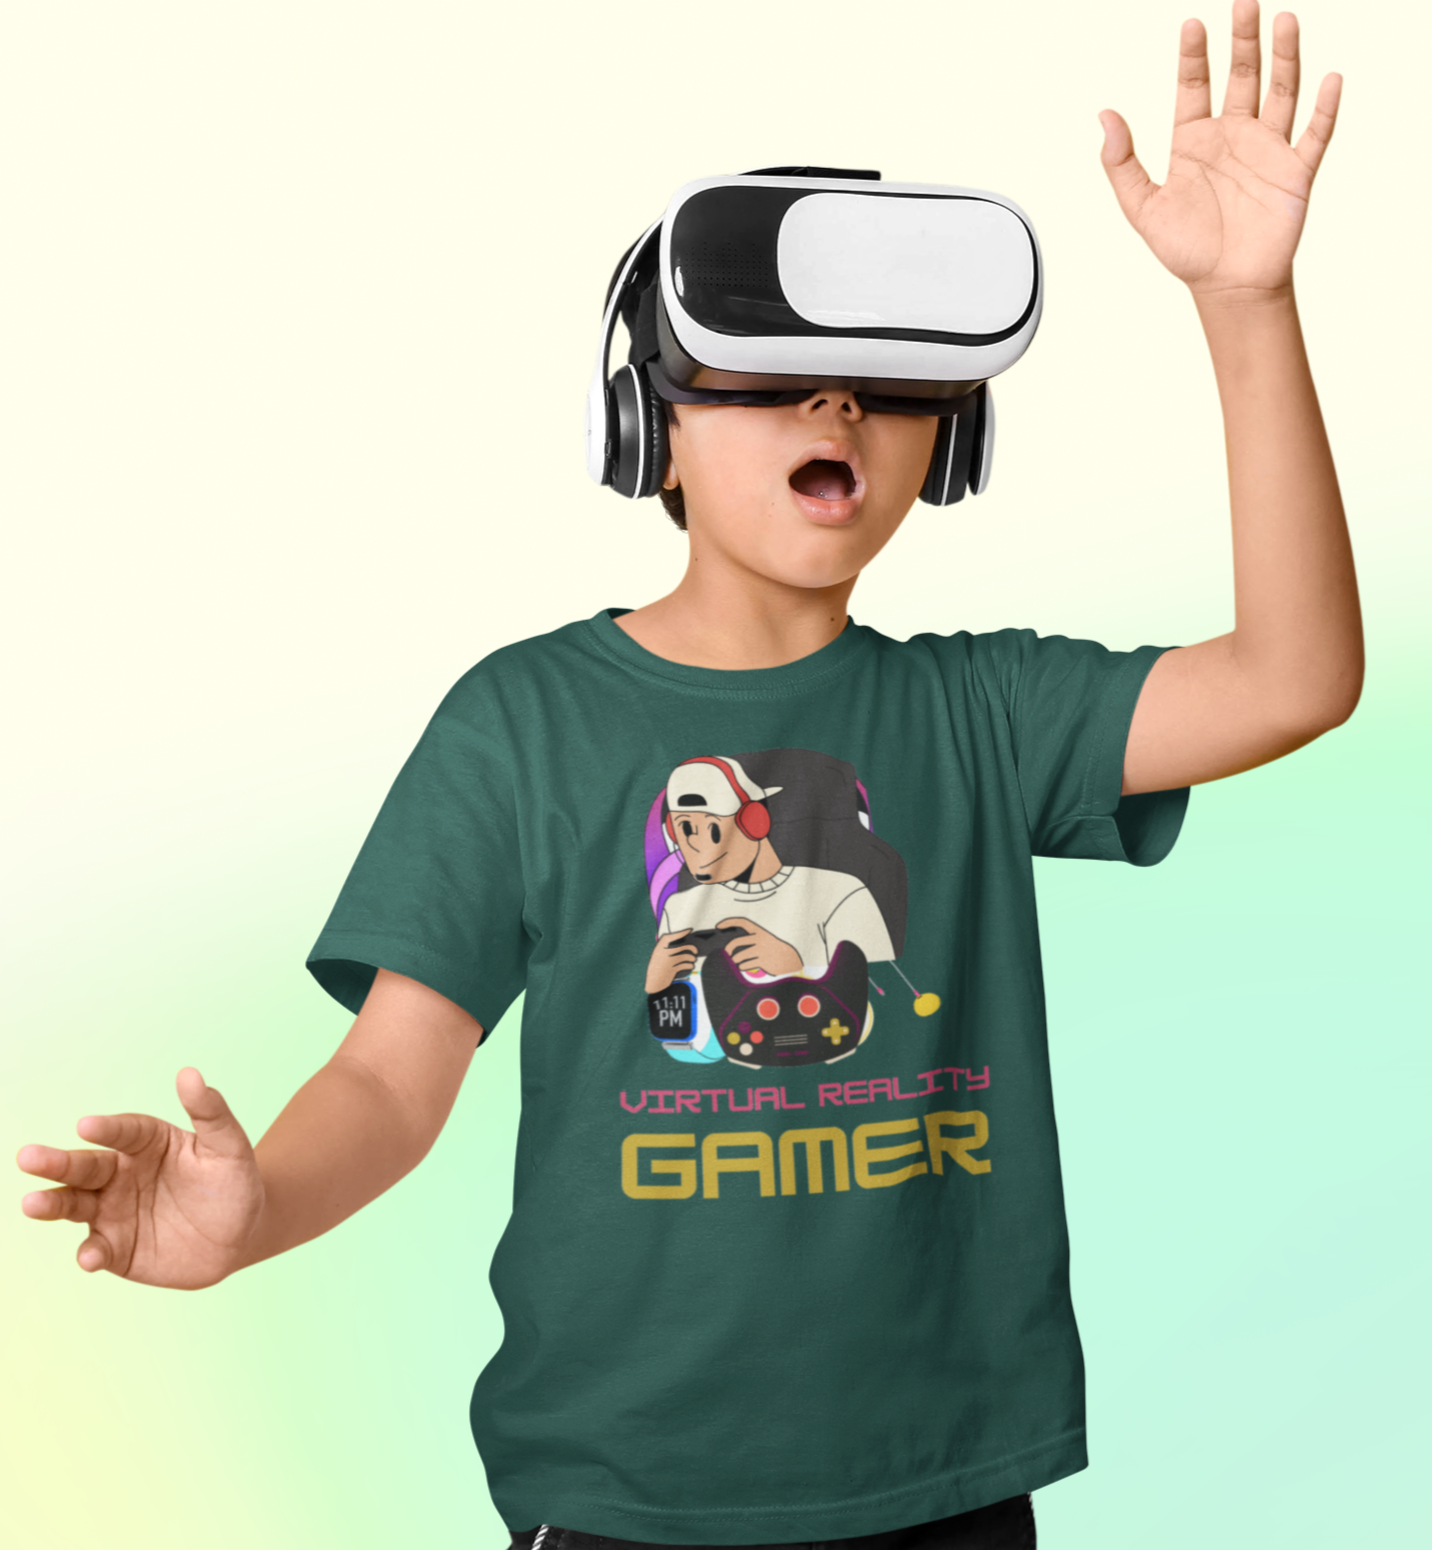 VR Gamer T-shirt for Kids Bottle Green